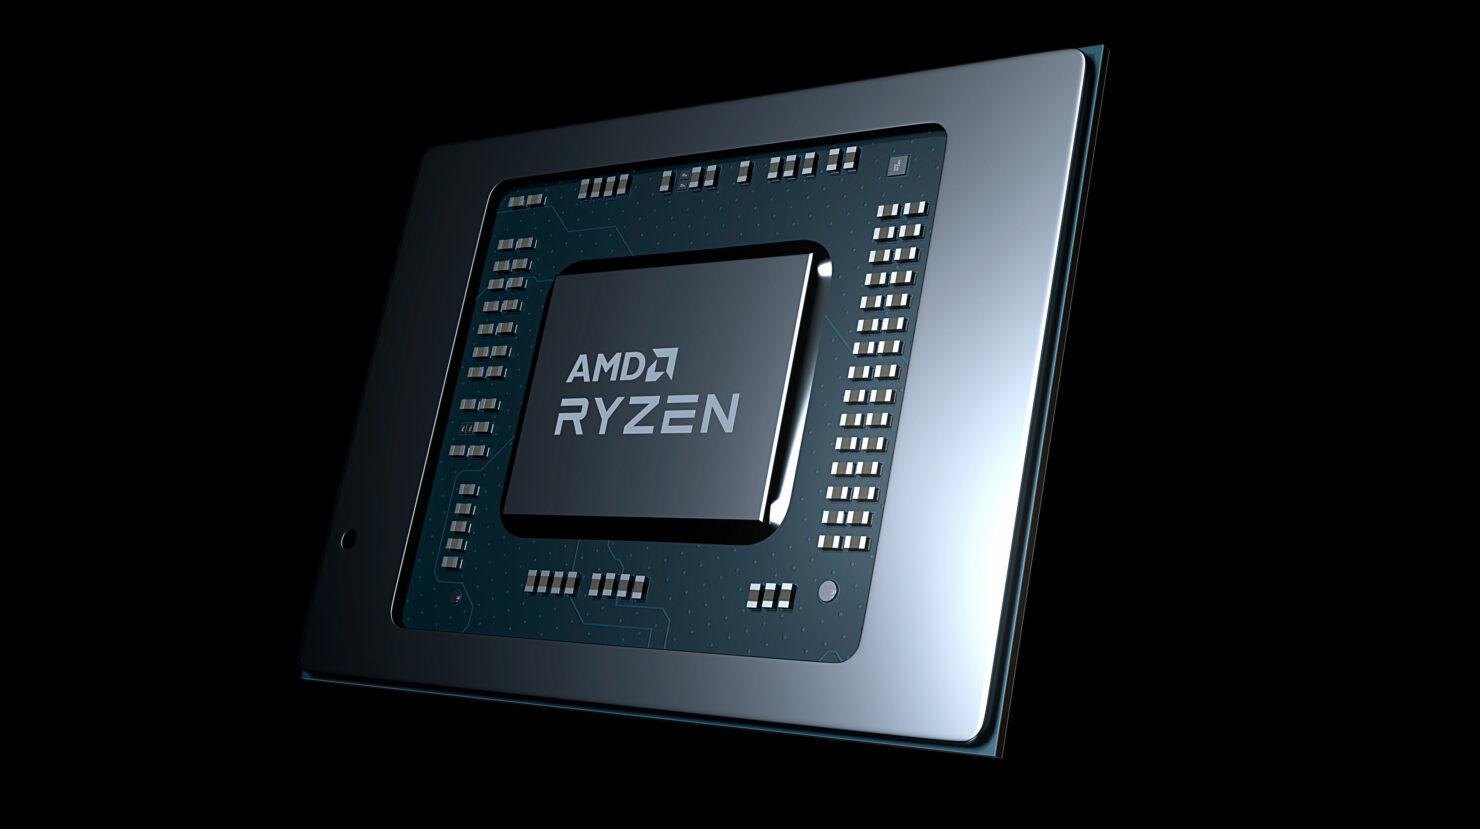 Rò rỉ thông số kỹ thuật APU AMD Ryzen 9 6900HX: 8 lõi Zen 3 6nm nâng cao, 20 MB bộ nhớ đệm, 4,6 GHz Boost & đồ họa tích hợp Radeon 680M 'RDNA 2'